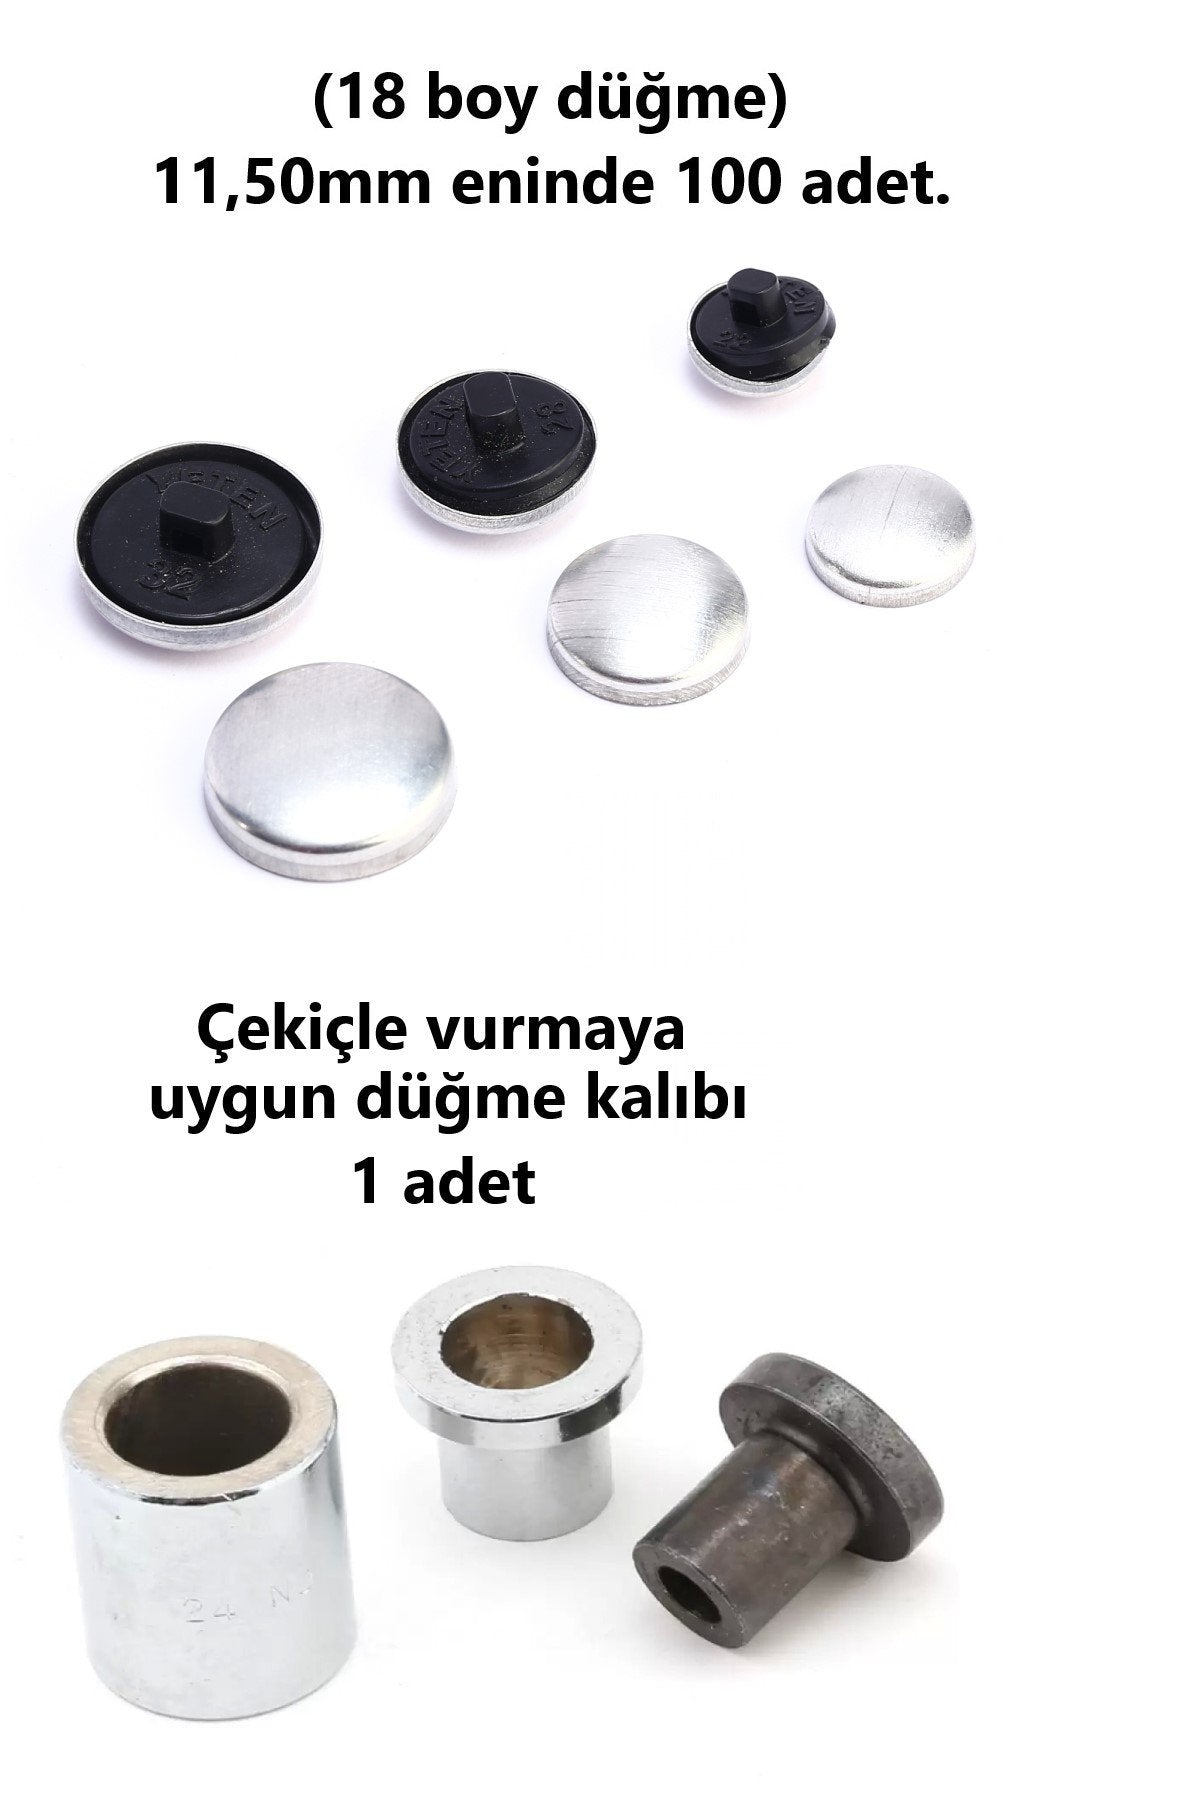 Kumaş Kaplama Düğme Yapım Seti - (18 Boy) 100 adet Düğme ve Kalıp  (11,50mm)